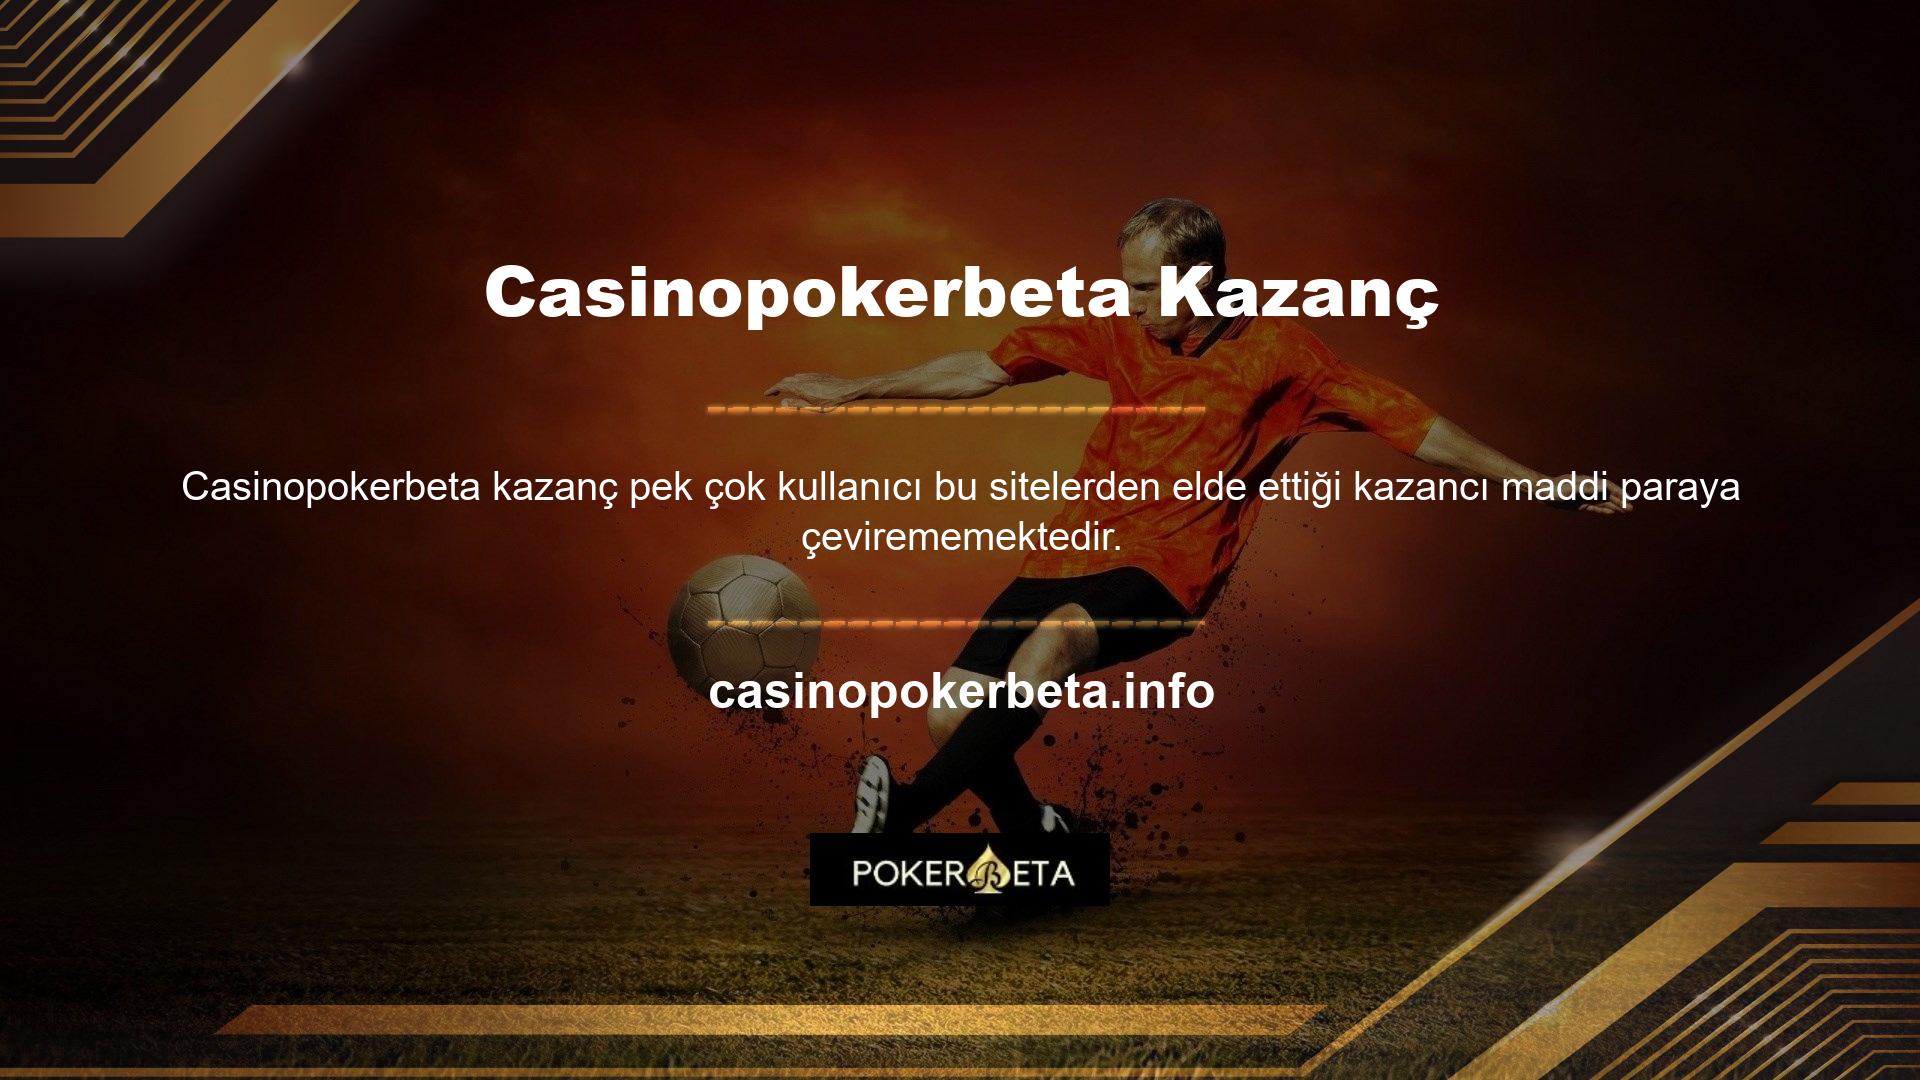 Site üyelerinin güvenliği her iki durumda da Casinopokerbeta güçlü yönlerinden biridir